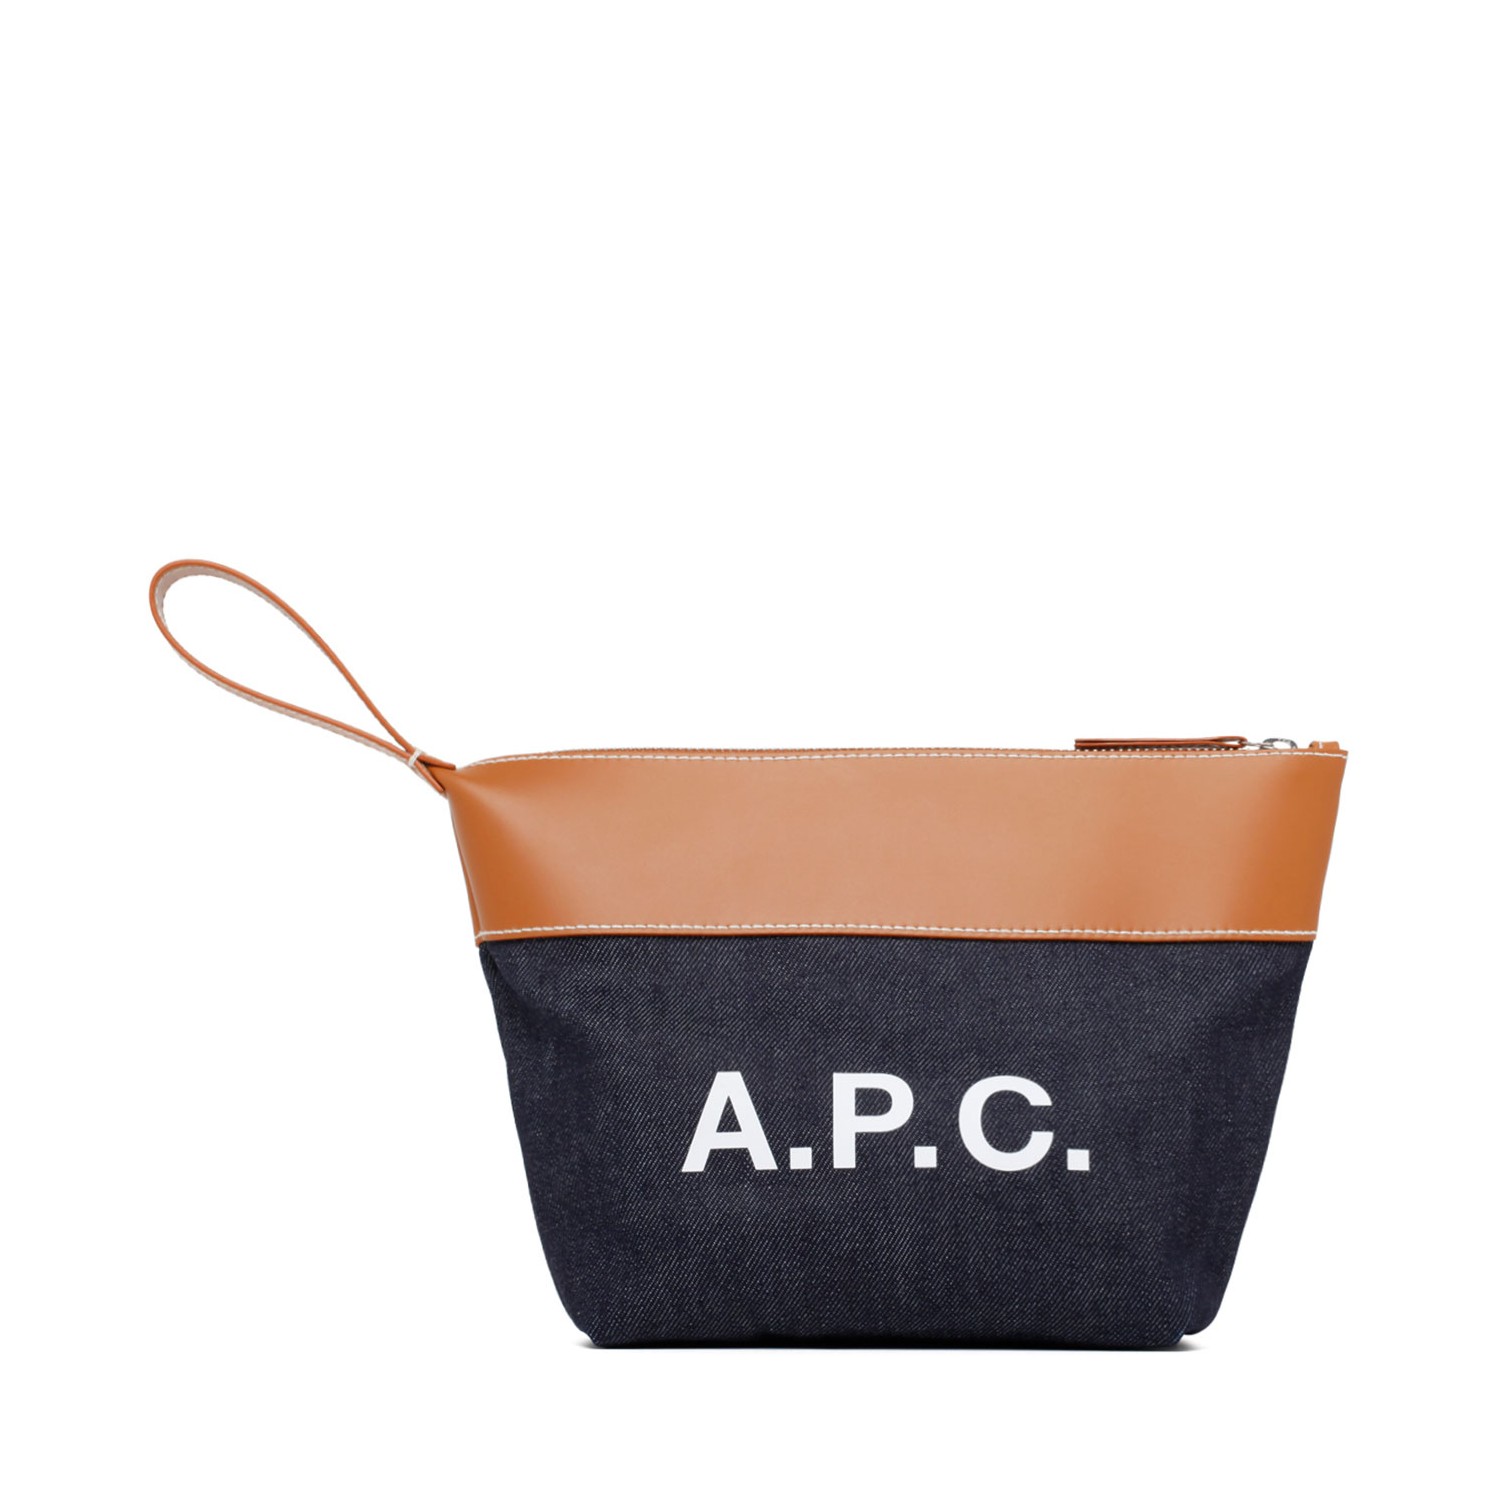 A.P.C. - Axel Cotton Small Shopping Bag